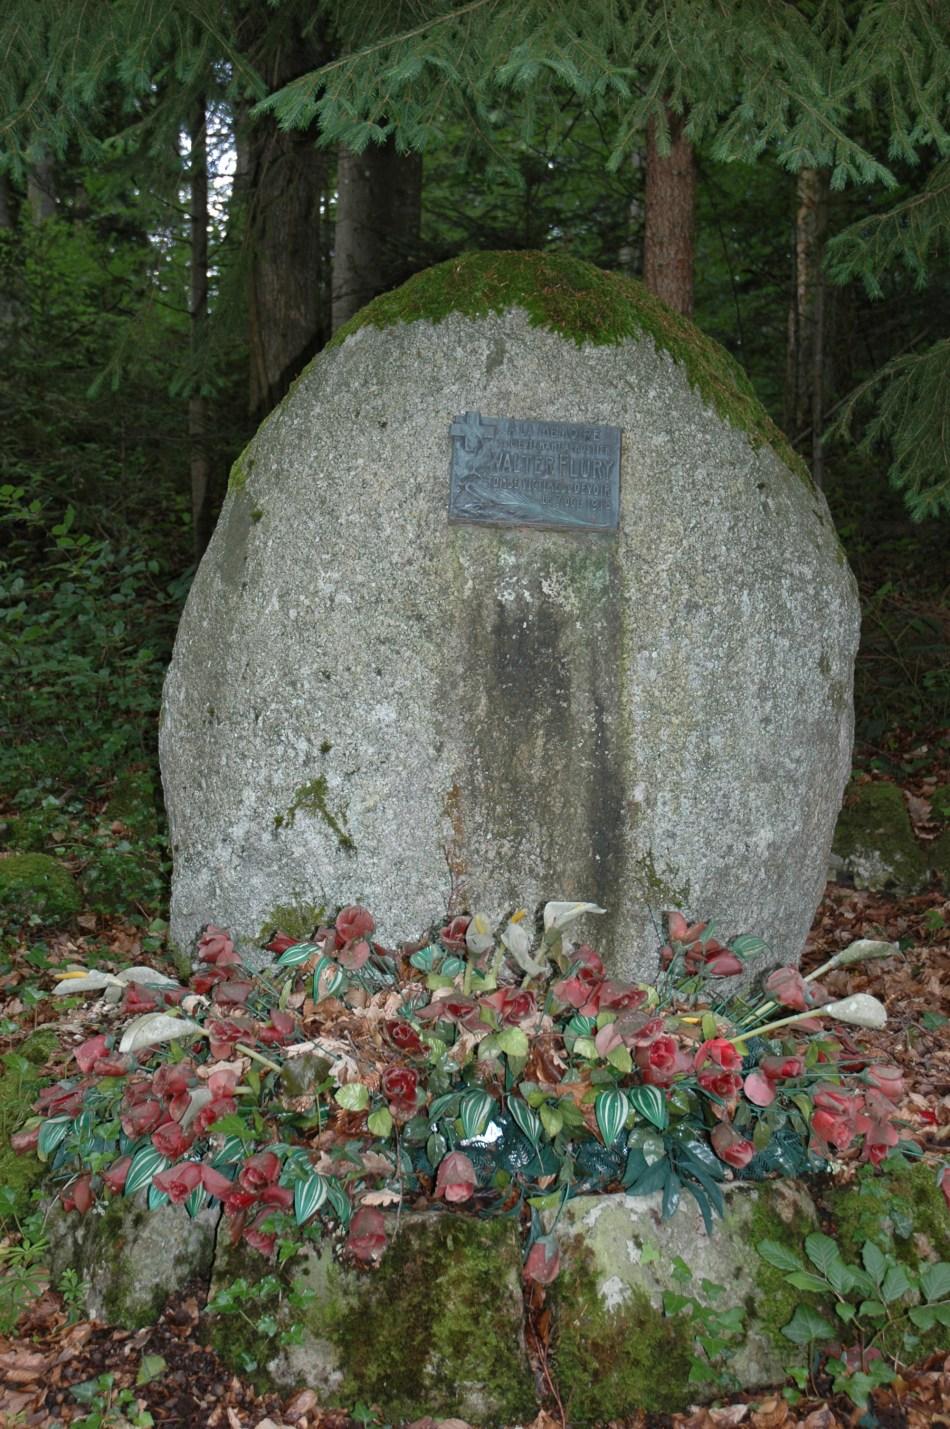 Gran piedra conmemorativa en medio del bosque.